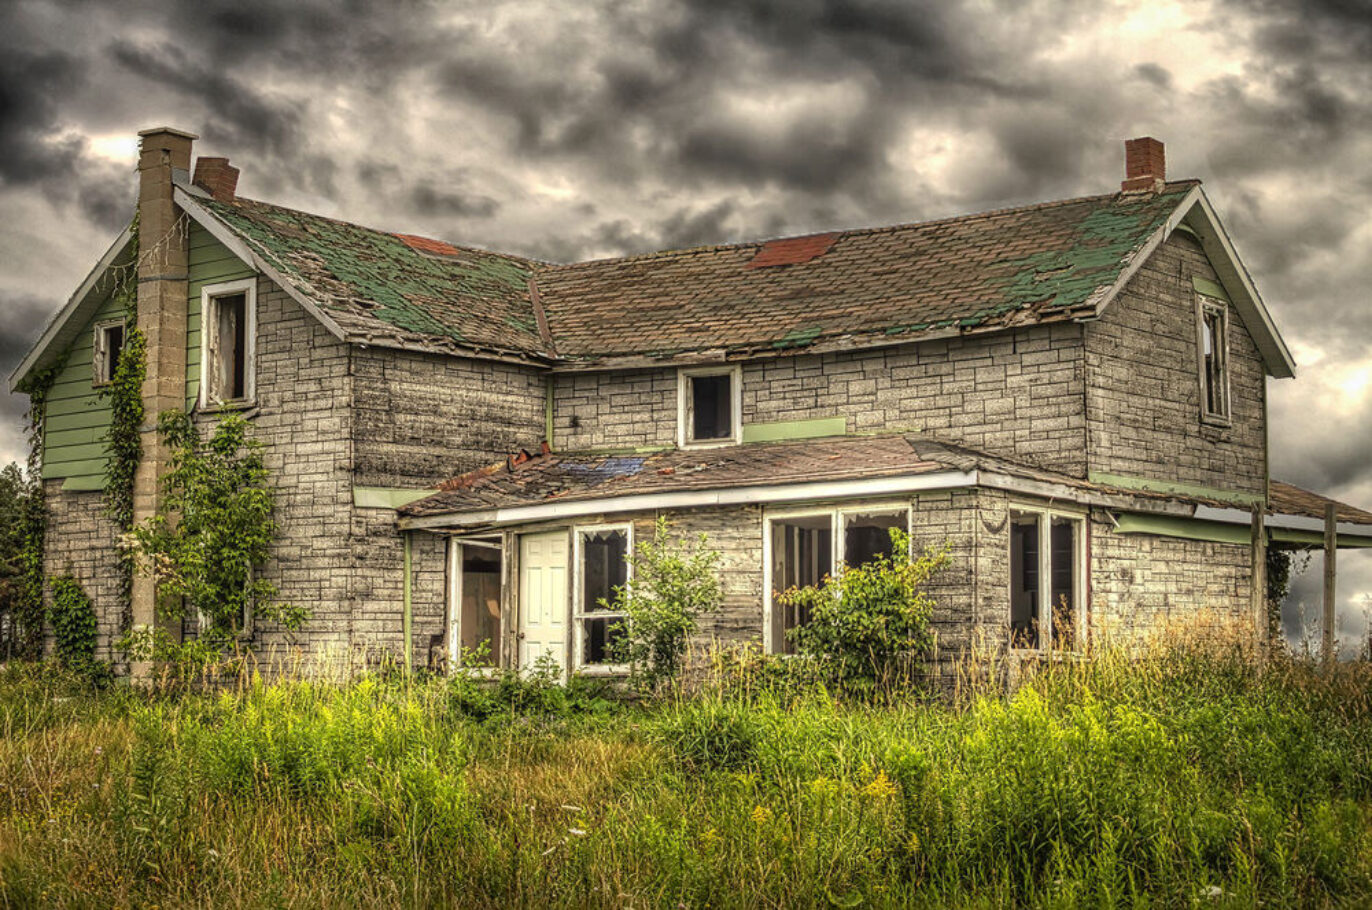 Summer Haze - Abandoned farmhouse in Ontario, Canada